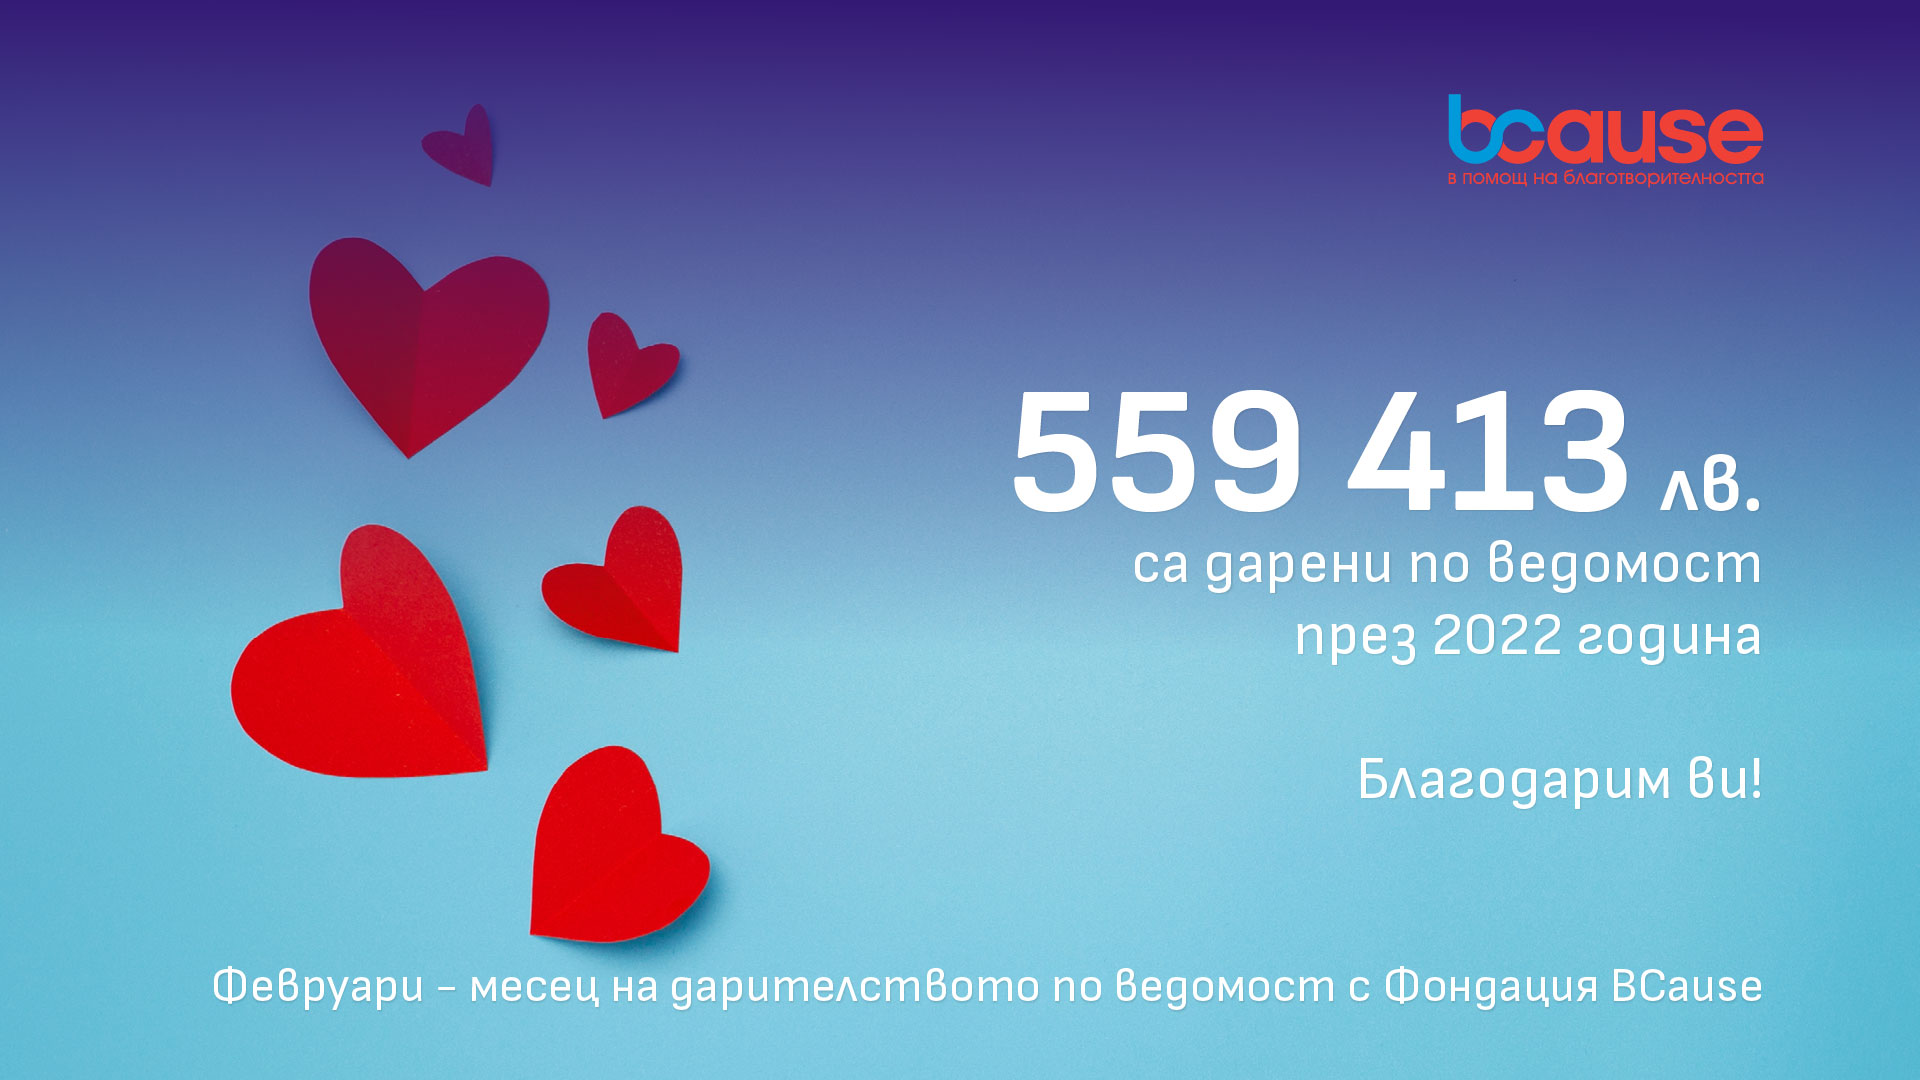 Над 500 000 лева са даренията по ведомост с фондация BCause през 2022 година